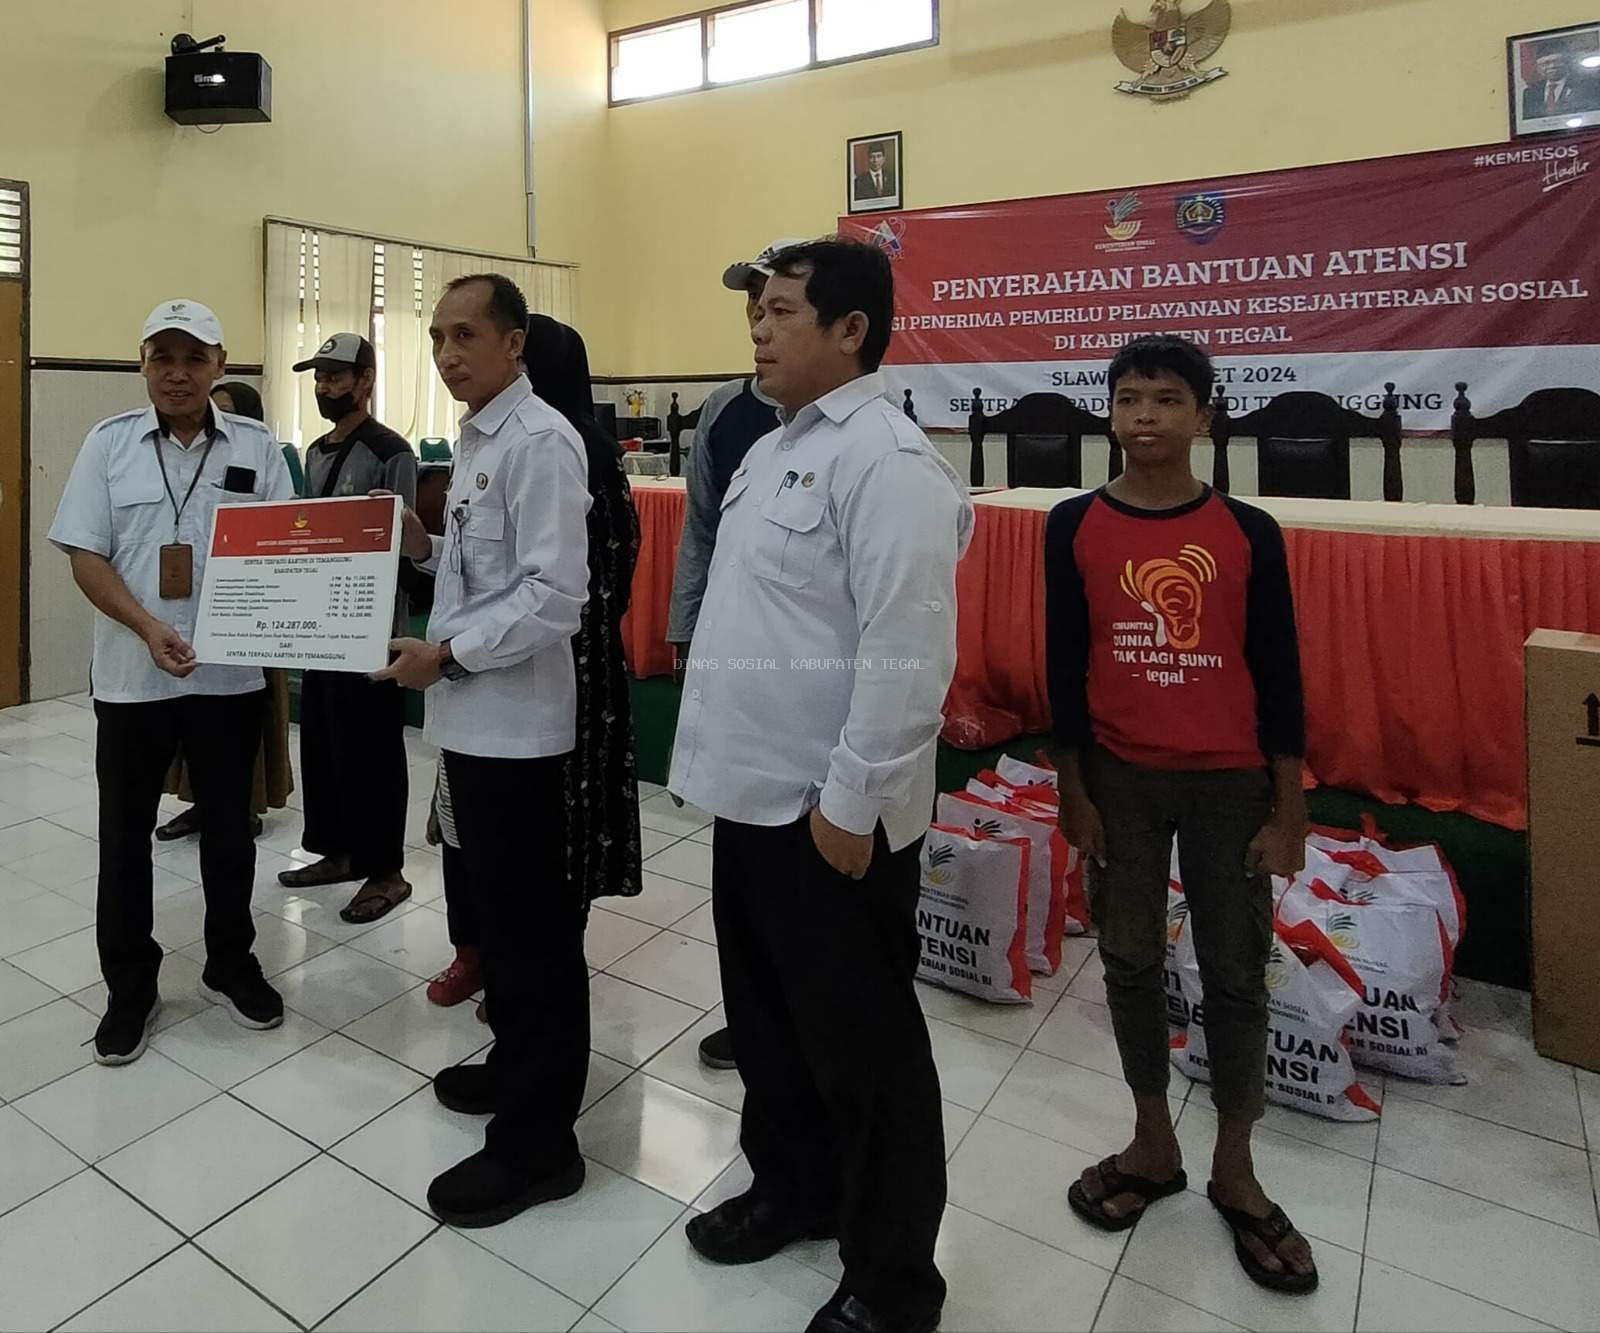 Dinas Sosial Kabupaten Tegal Berikan Akses 41 Orang Dapat Bantuan ATENSI Kementerian Sosial